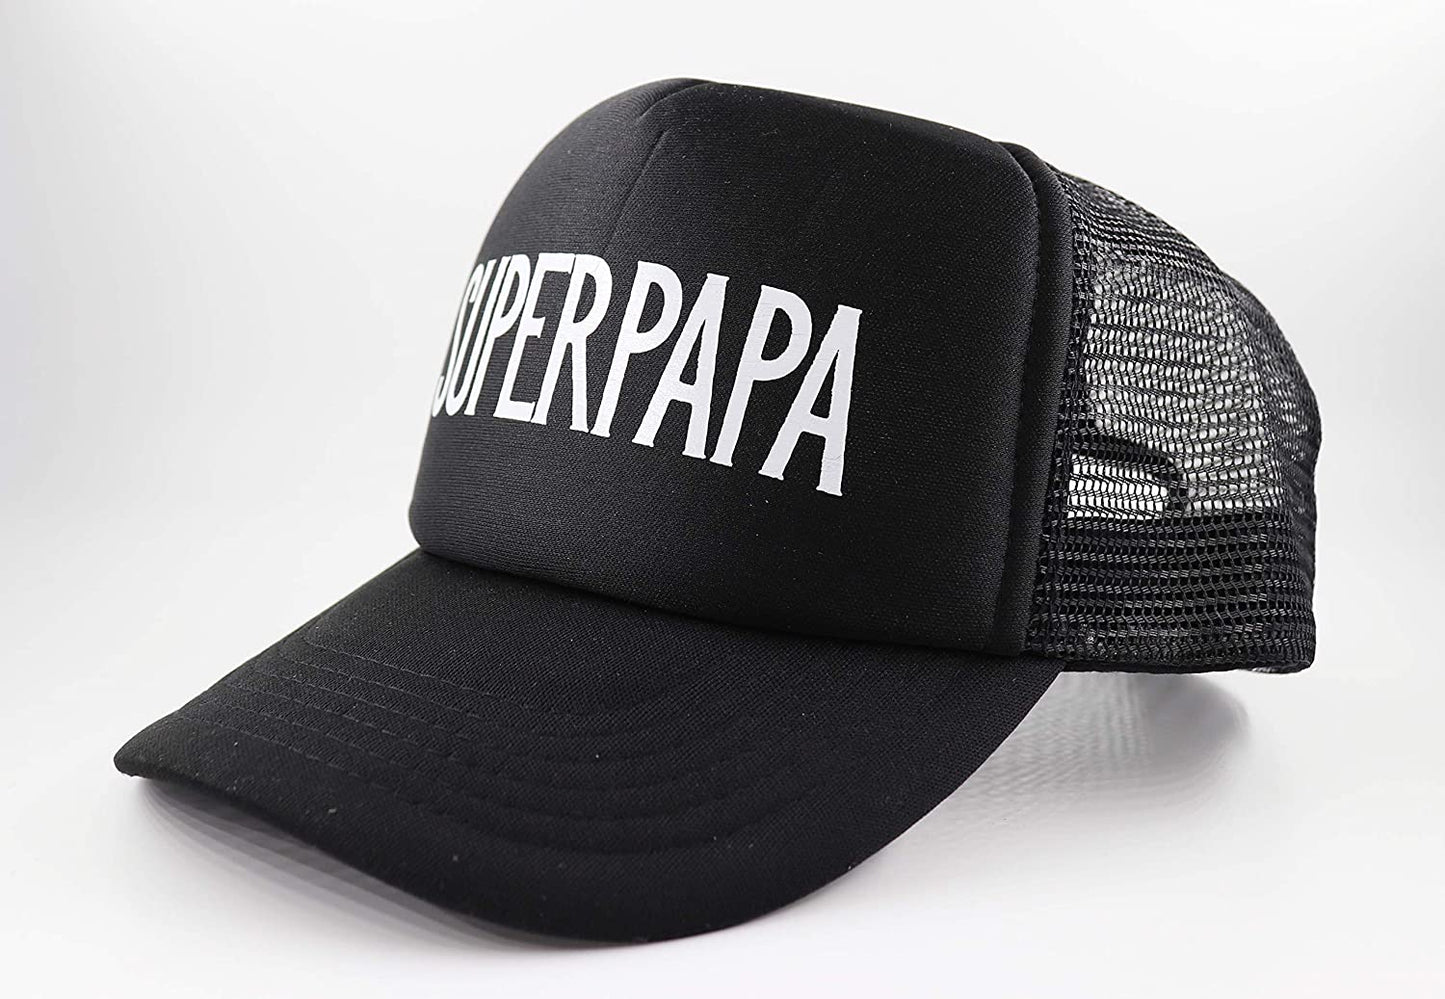 PICSonPAPER Herren Mesh Cap schwarz mit Aufdruck/Print Superpapa, Cap mit Spruch zum Vatertag, Vatertagsgeschenk